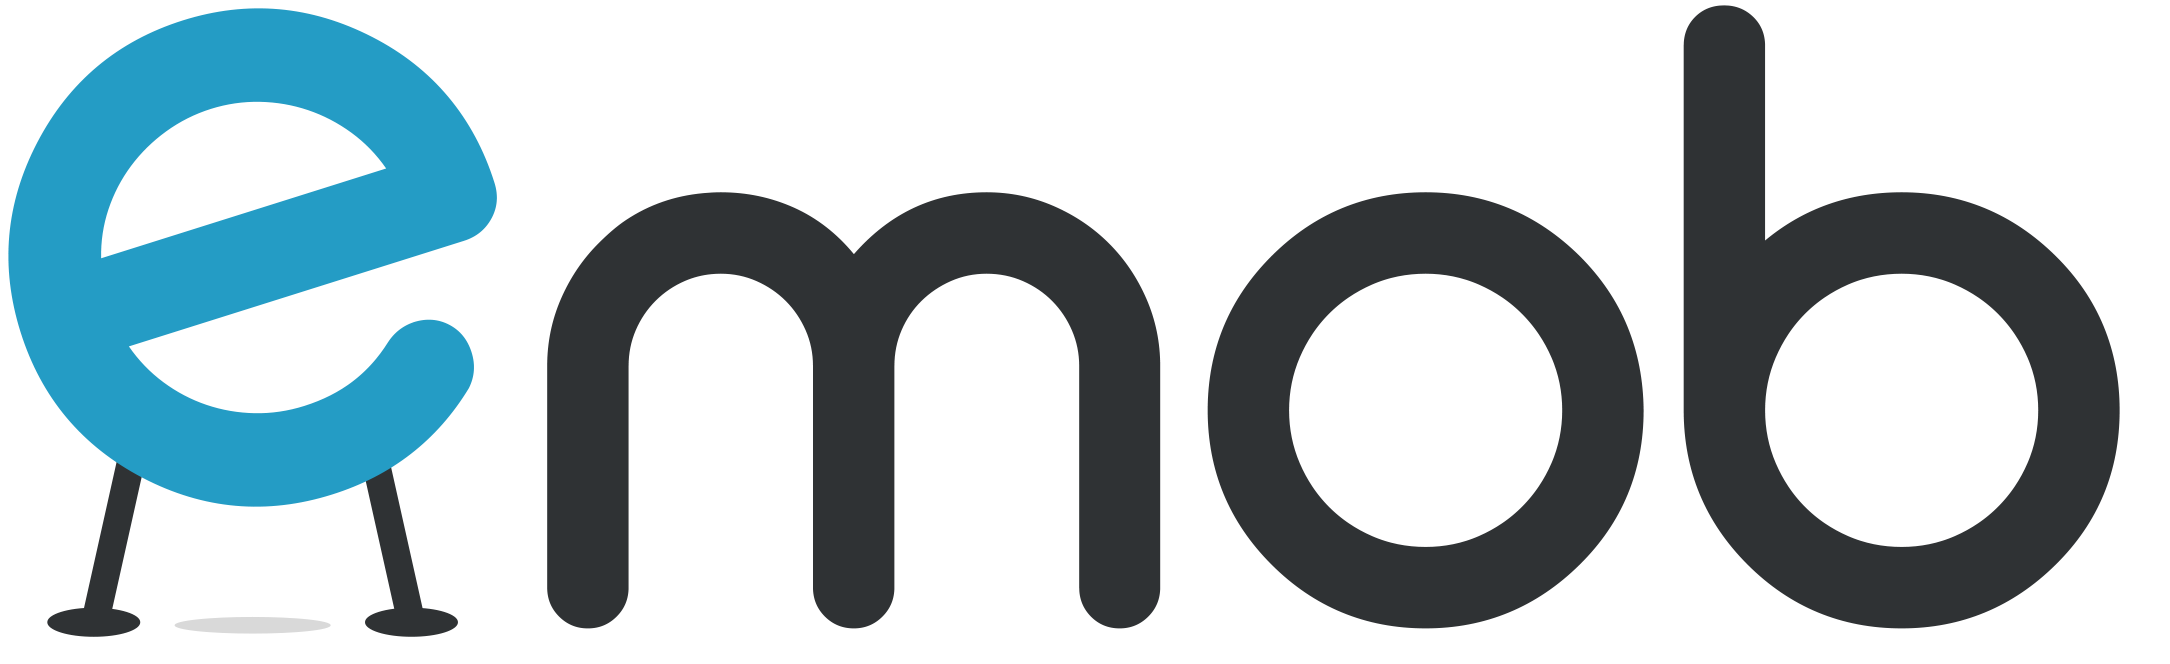 Logo Emob